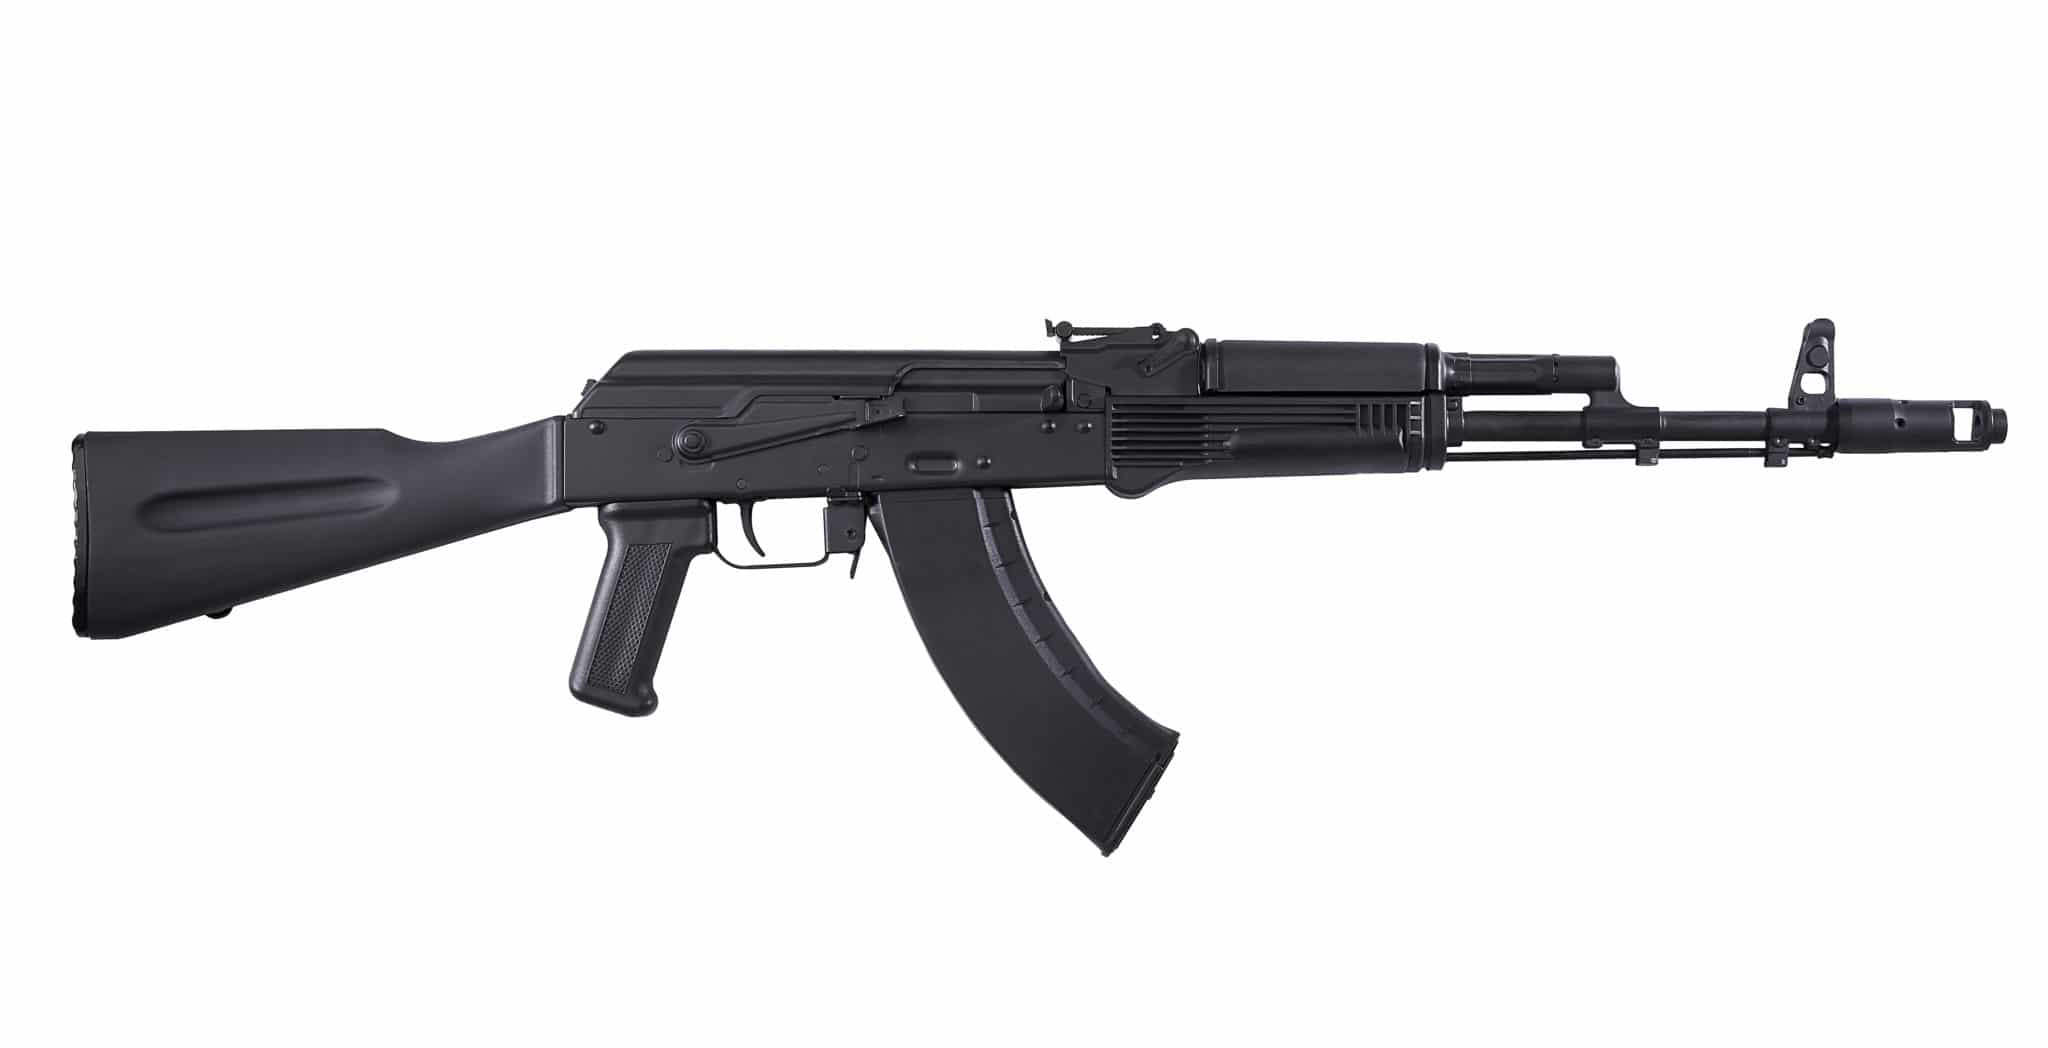 Kalashnikov KR-103 Rifle